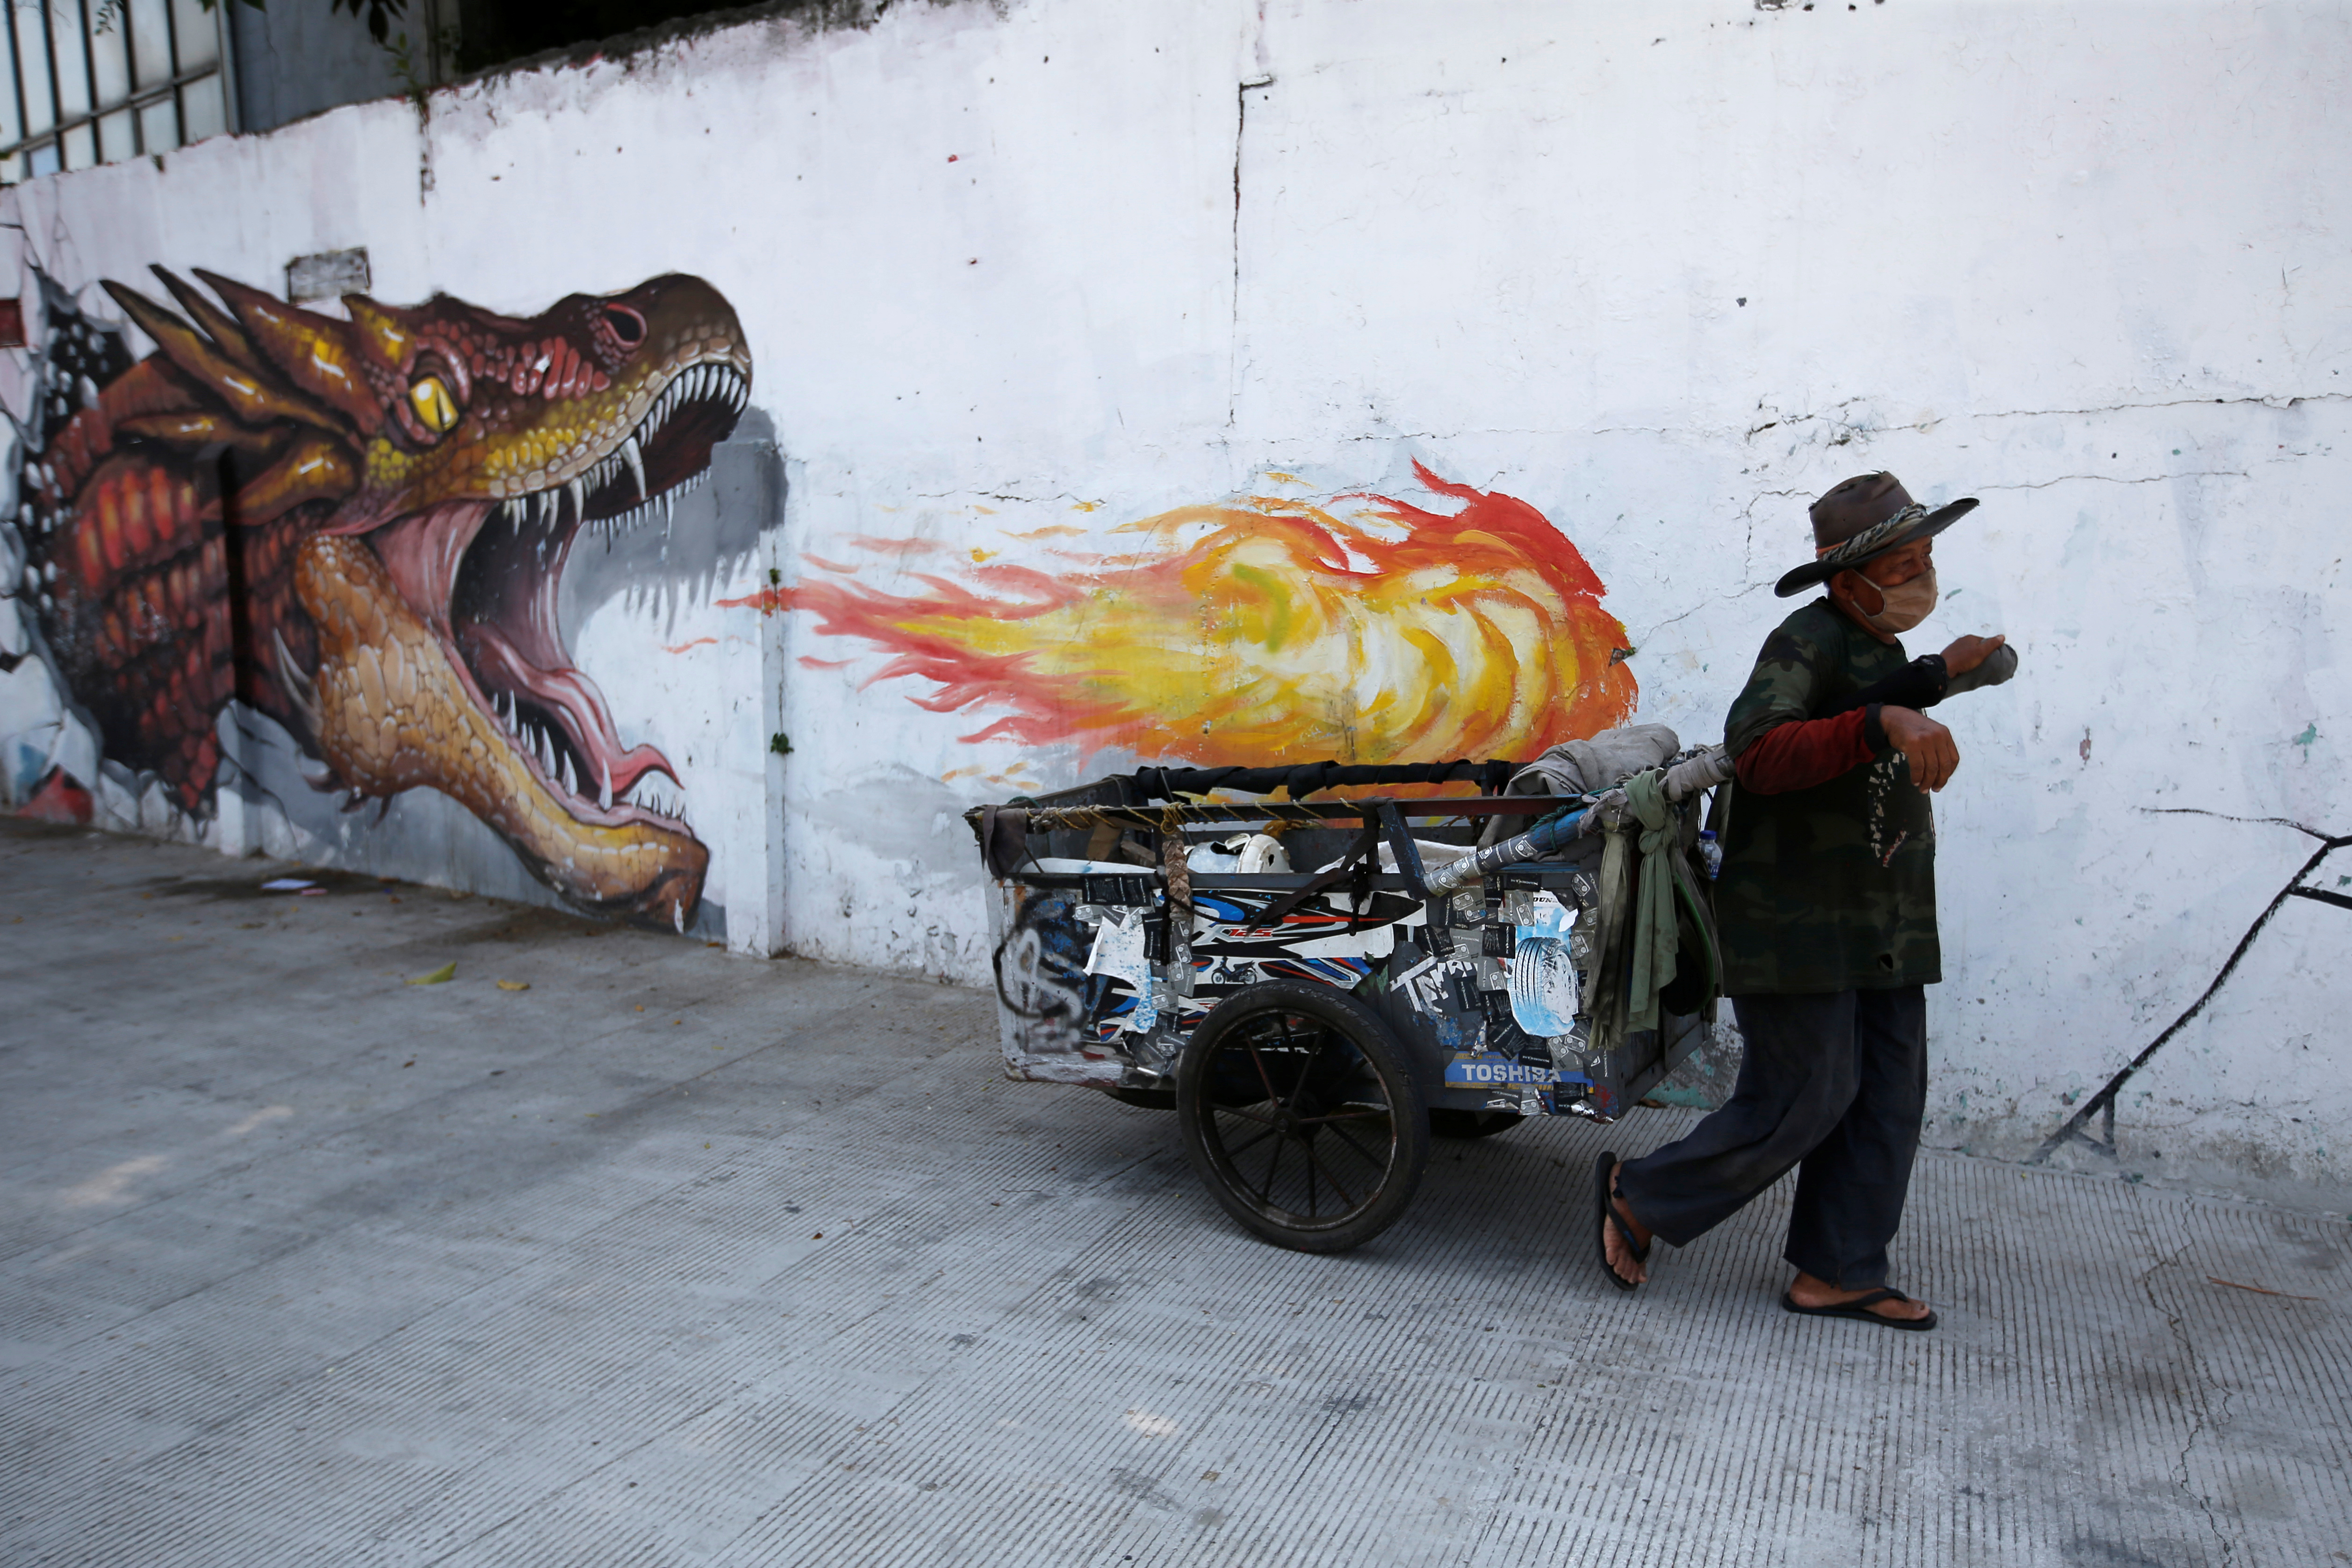 Un hombre con una máscara protectora tira de una carreta pasando por un mural mientras continúa el brote de la enfermedad coronavirus (COVID-19) en Yakarta, Indonesia, el 23 de agosto de 2020. REUTERS/Willy Kurniawan